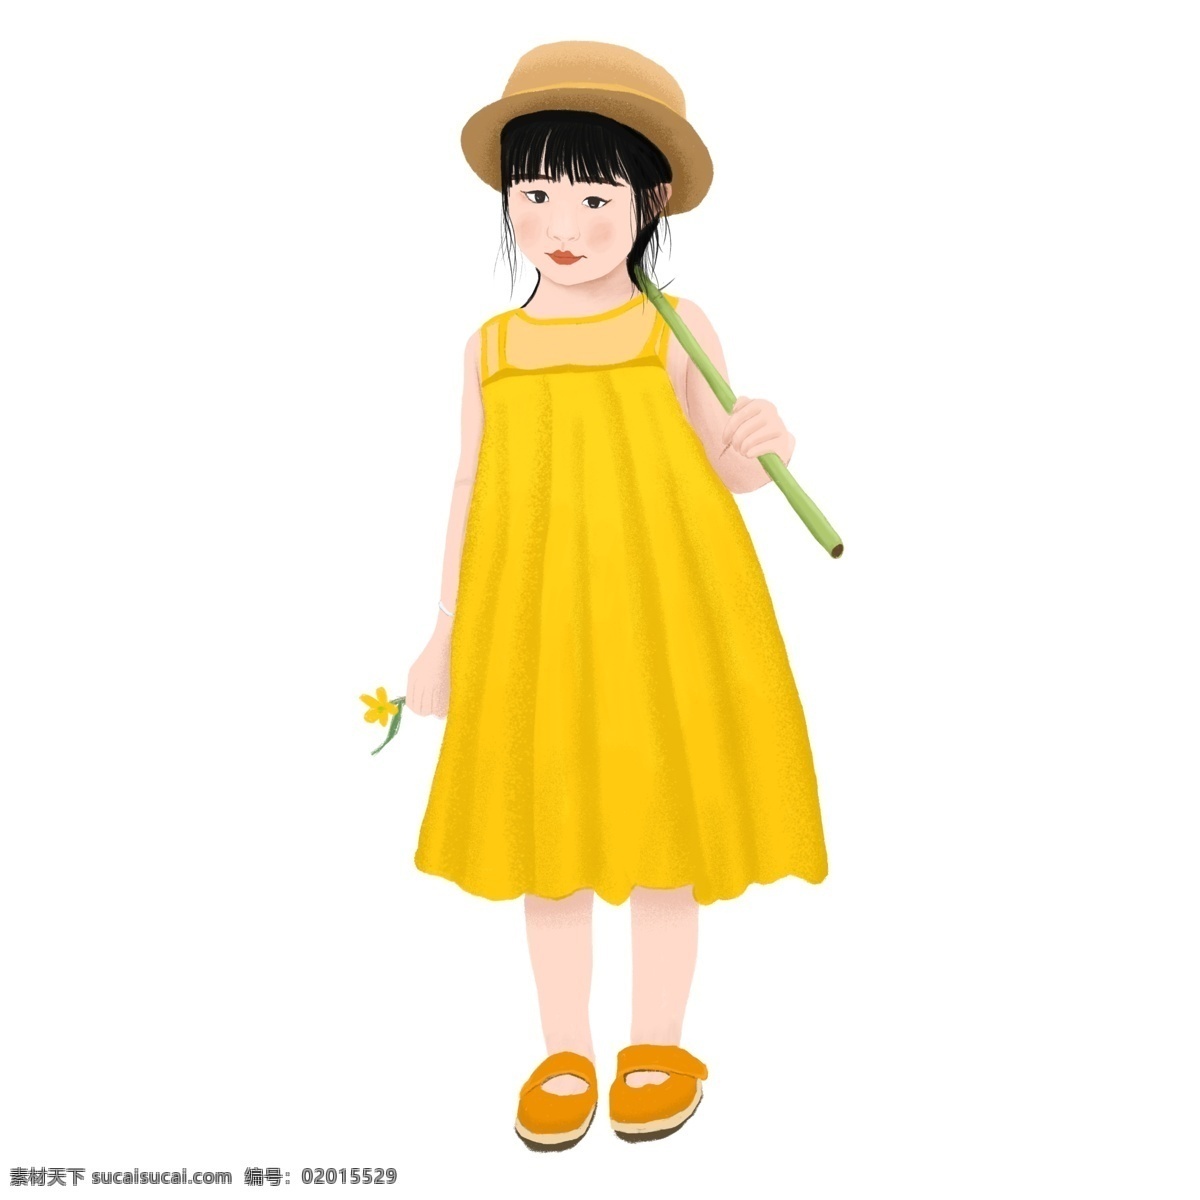 手绘 穿 黄色 裙子 小女孩 黄色裙子 花 女孩 可爱的女孩 可爱 黄裙子 漂亮 竹子 帽子 戴帽子的女孩 春天